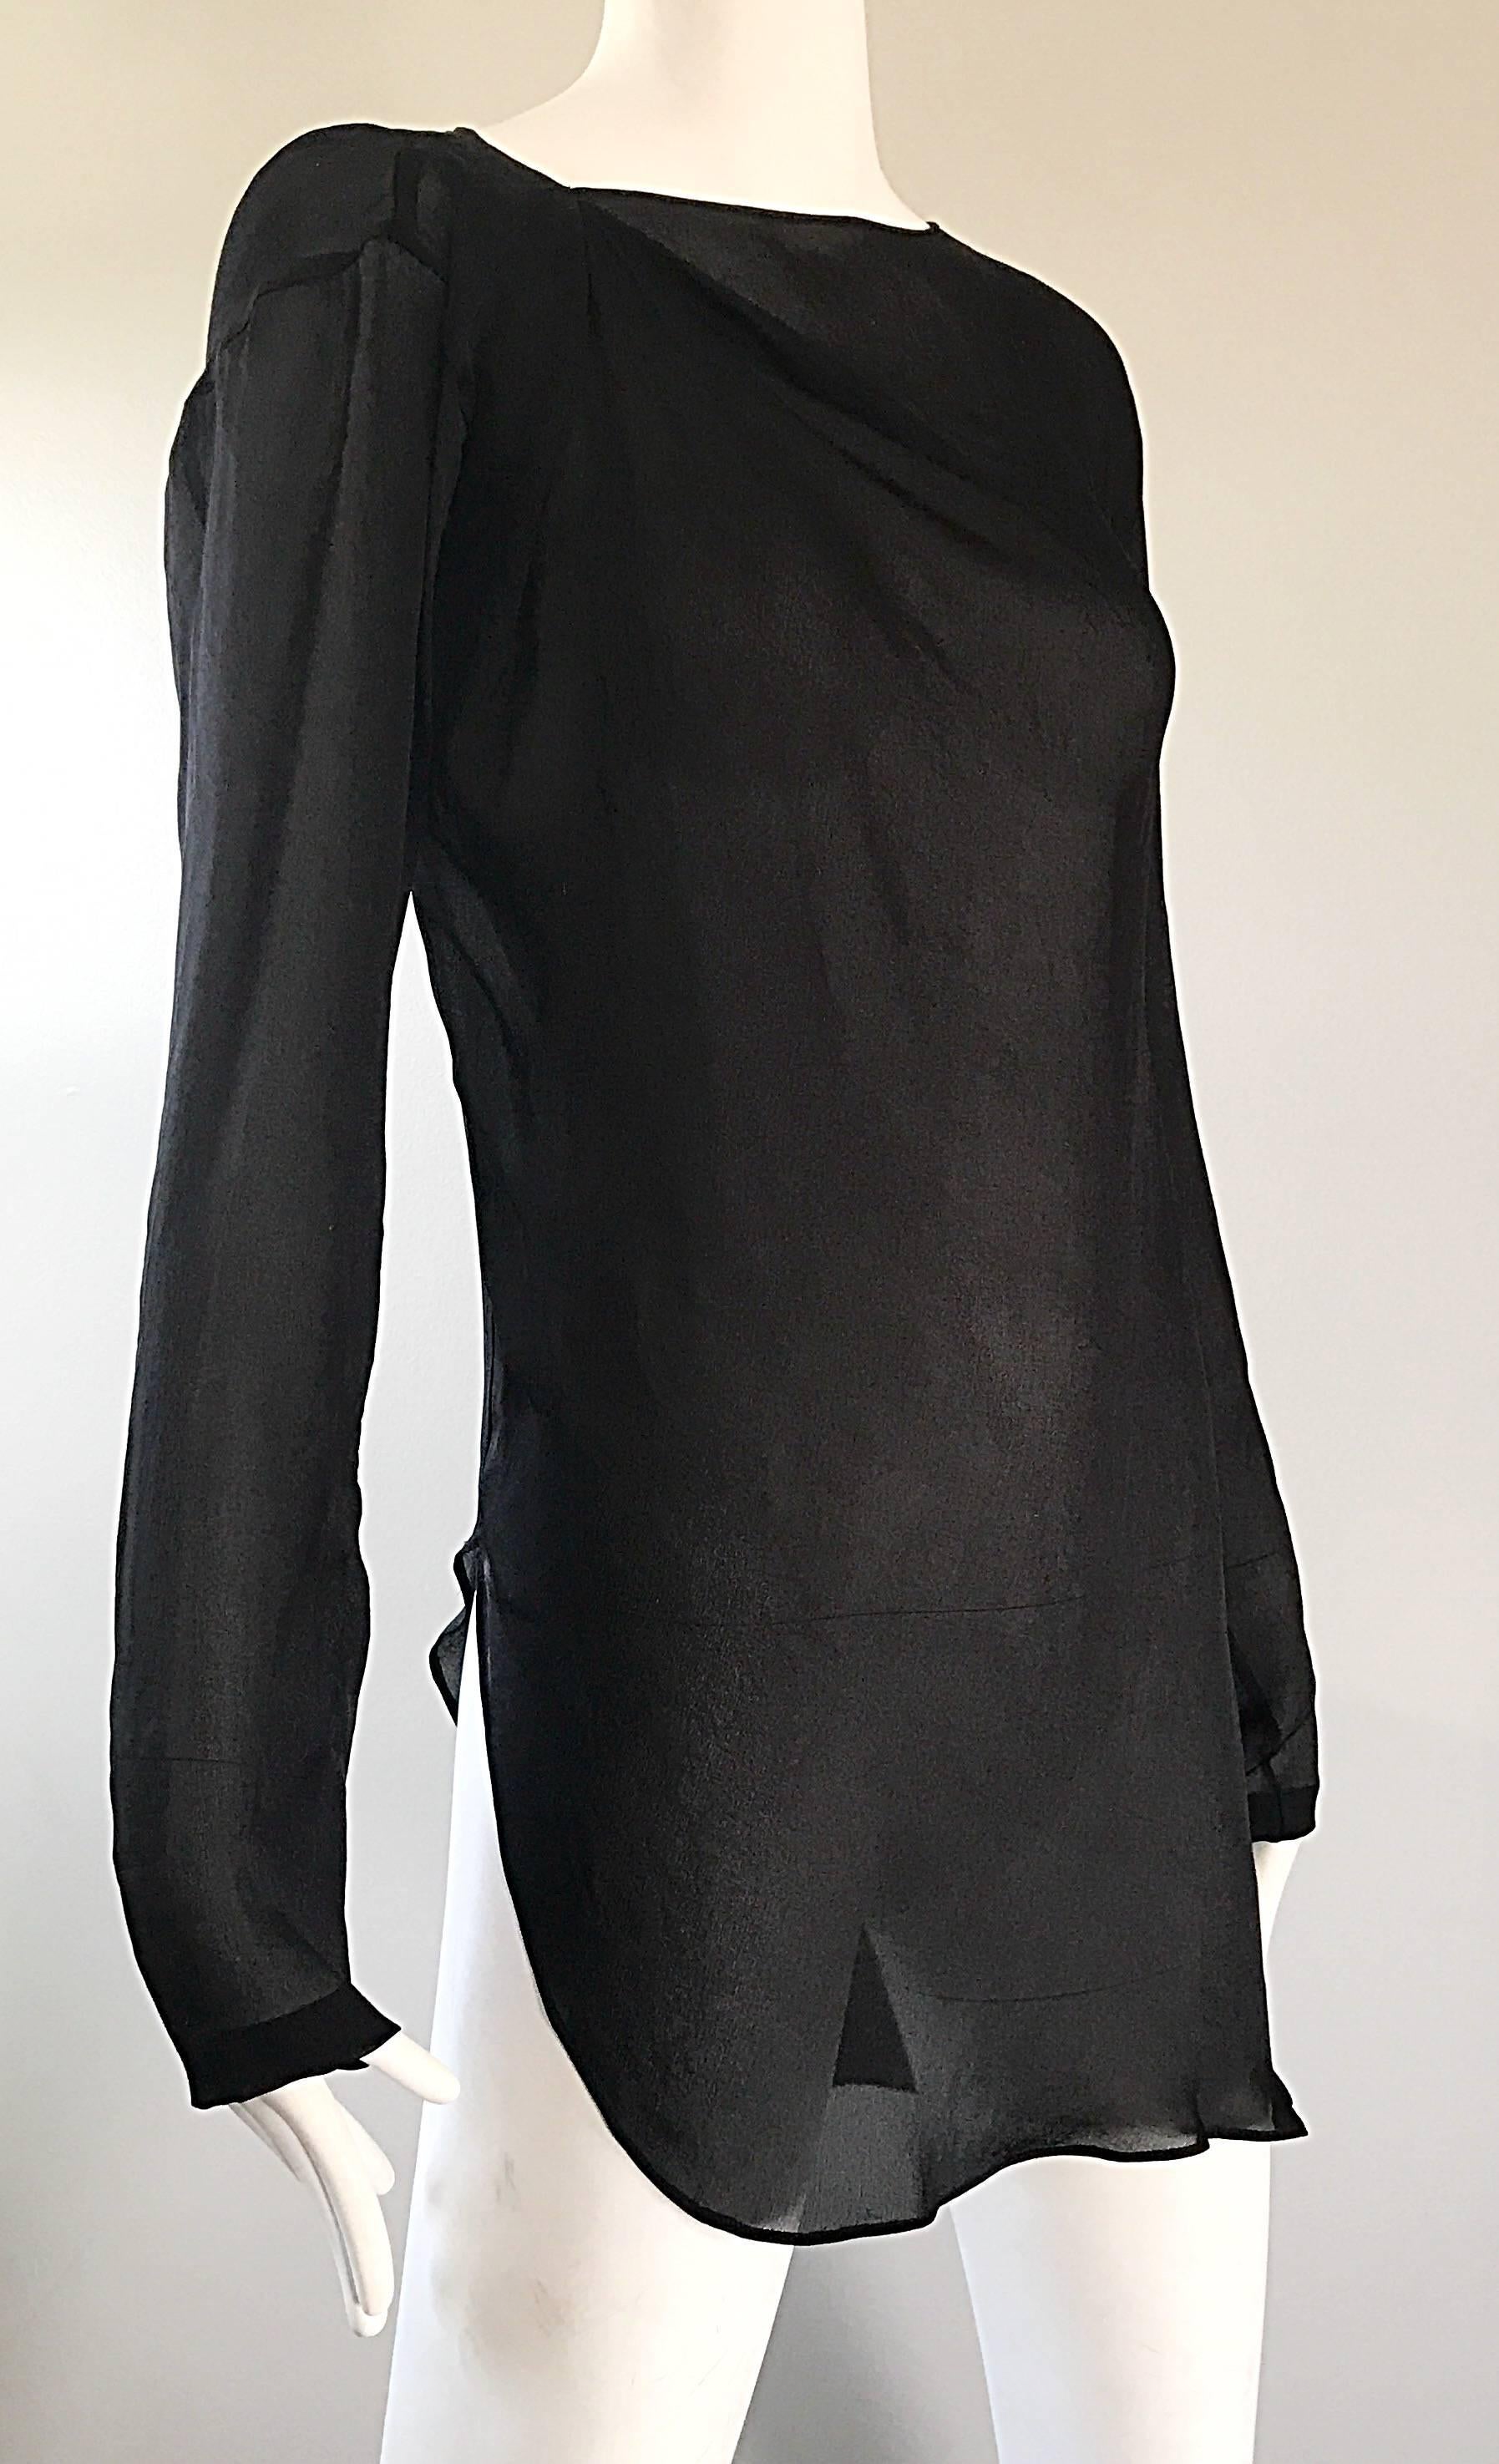 Vintage Halston Black Chiffon Black Semi Sheer Asymmetrical Tunic Top Blouse 1